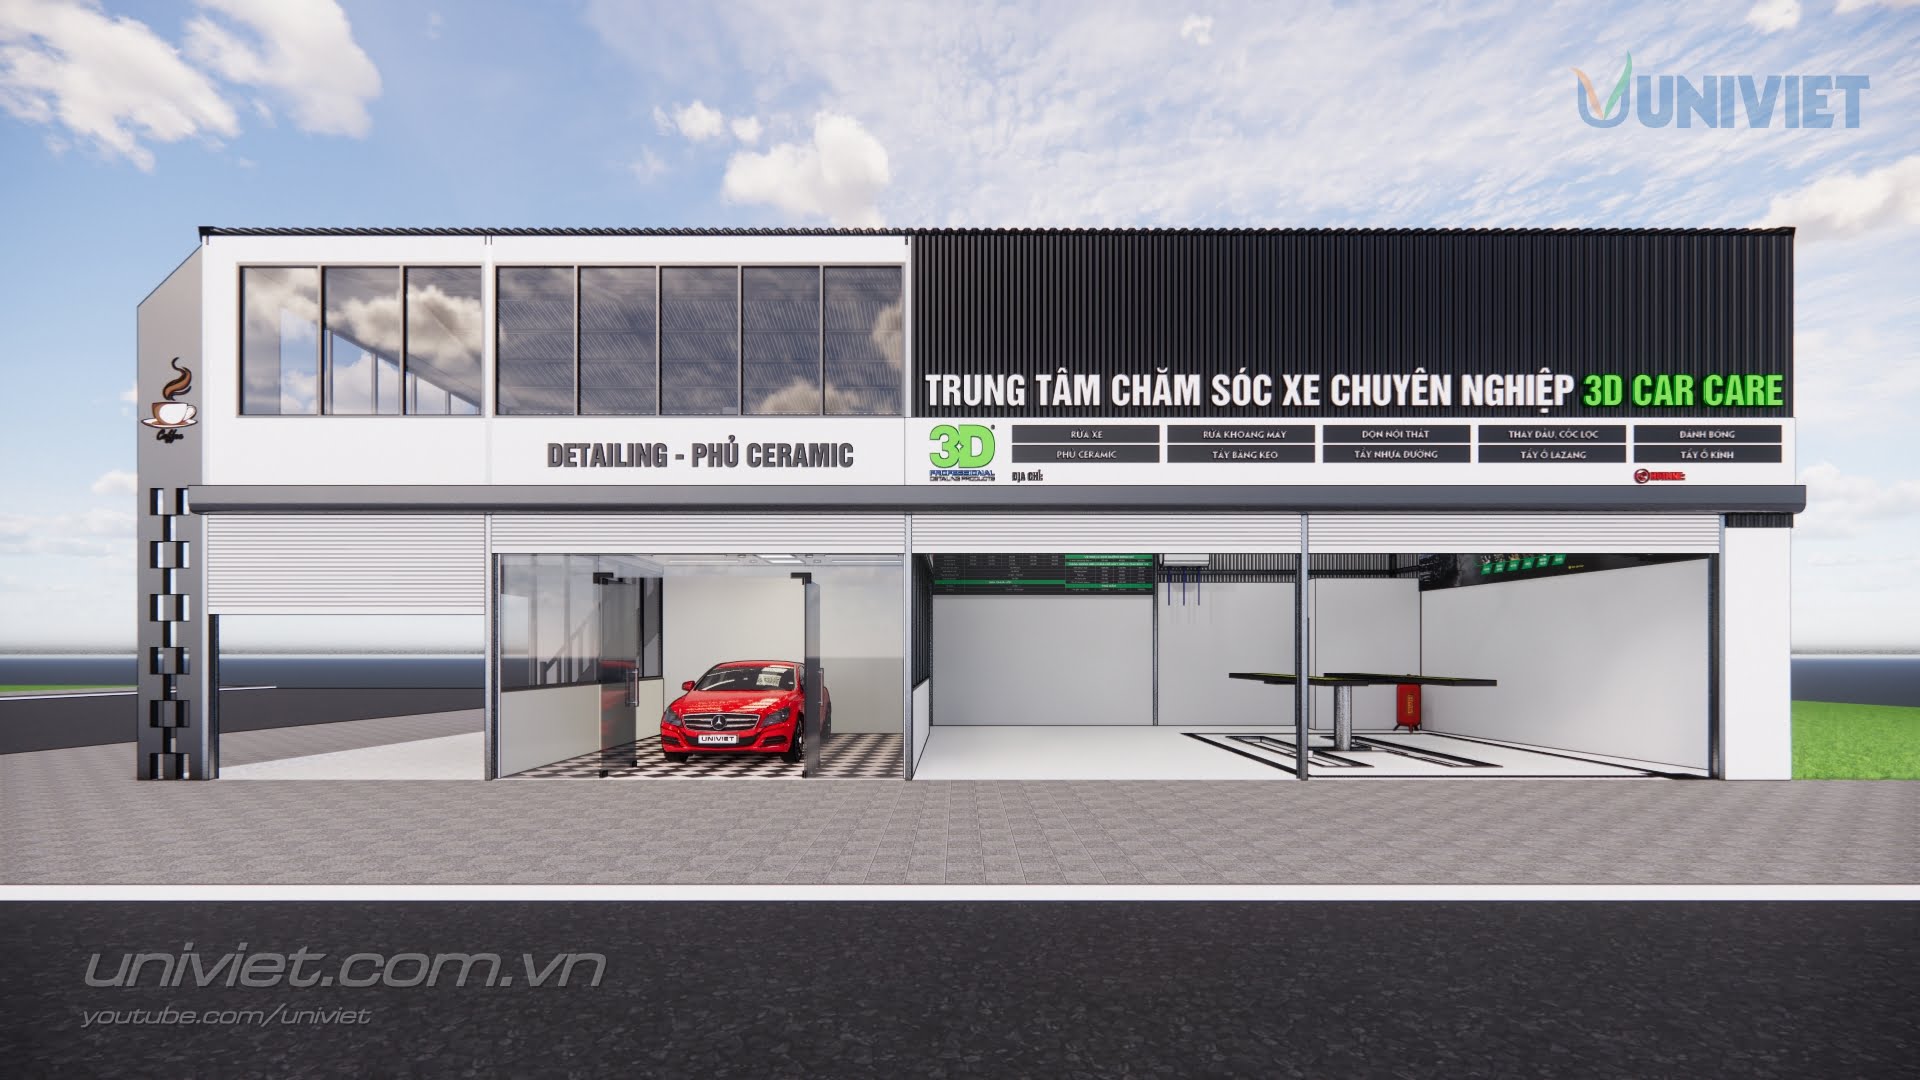 Mô hình 3D Trung tâm chăm sóc xe hơi chuyên nghiệp tại Bình Thuận